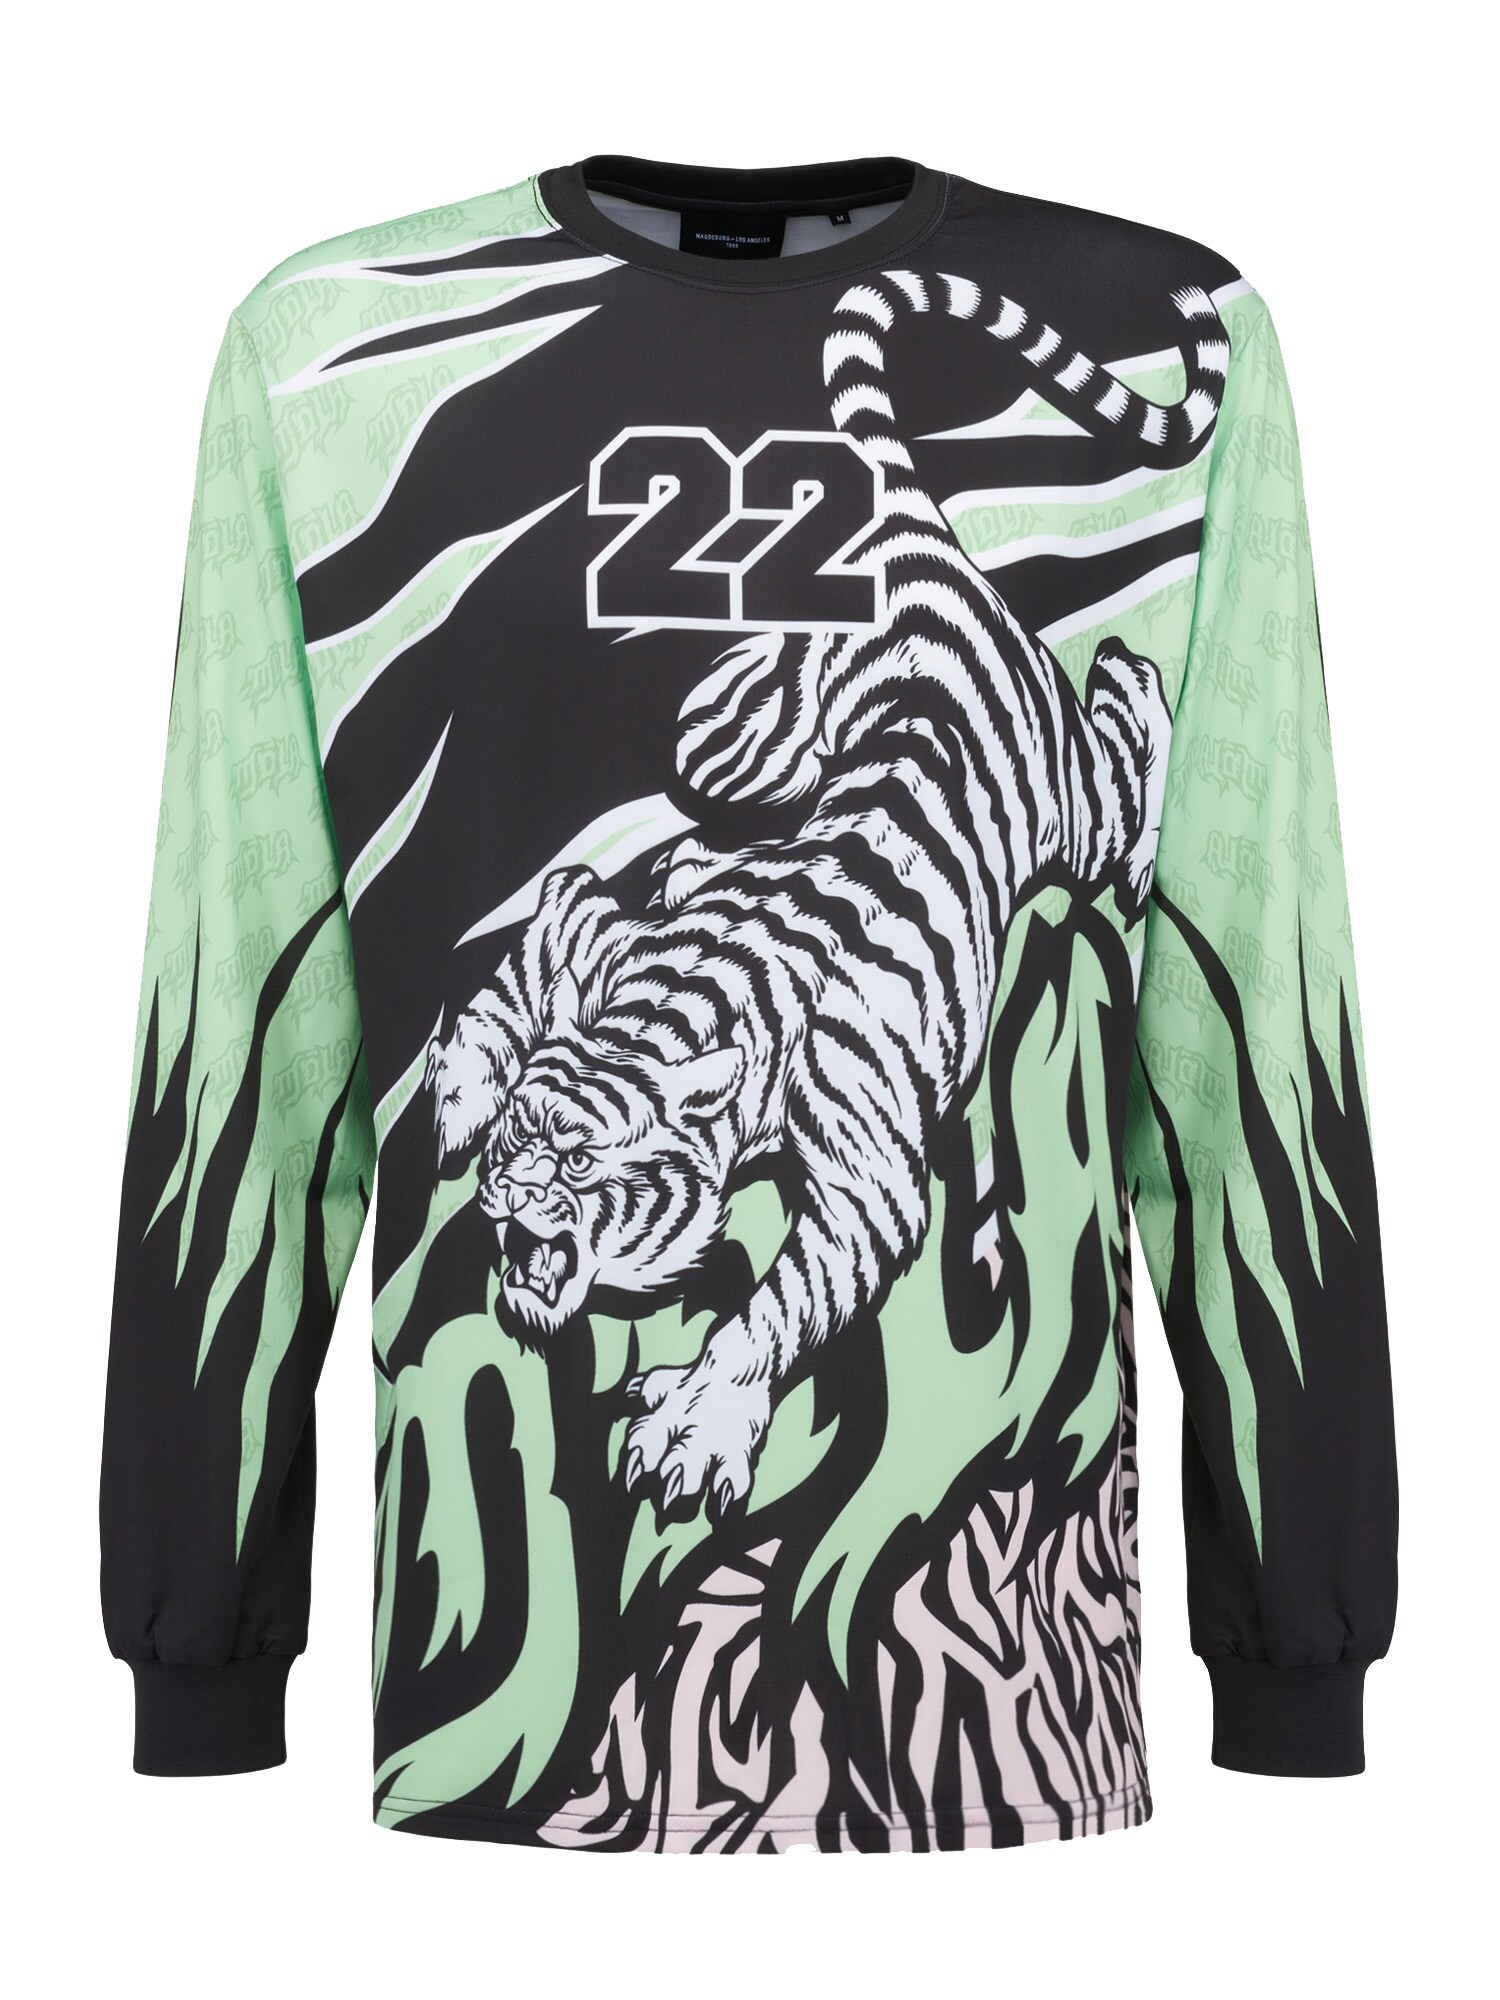 Magdeburg Los Angeles Marškinėliai ' TIGER' žalia / juoda / balta / gelsvai pilka spalva